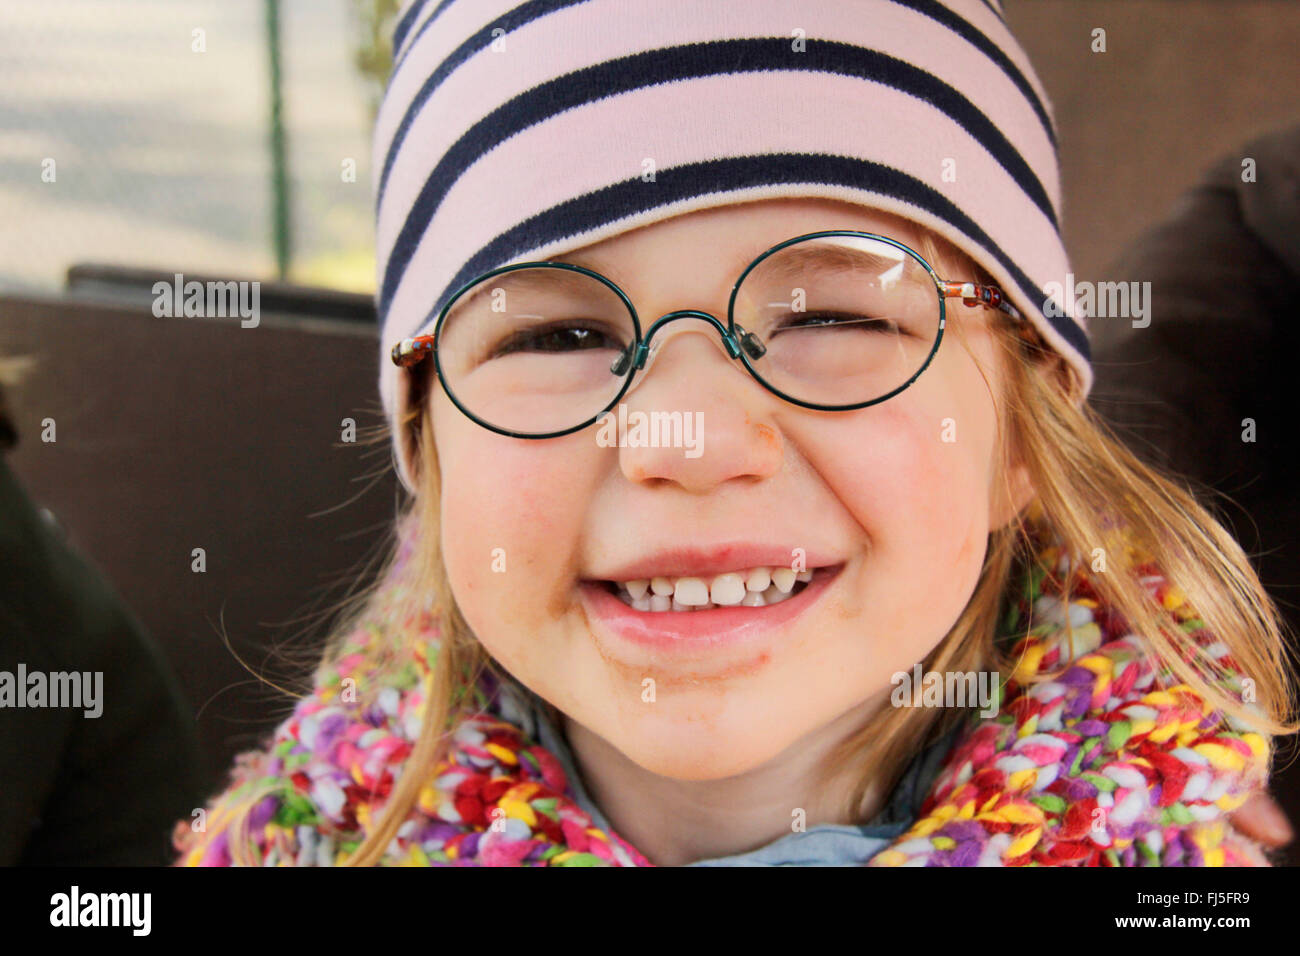 Smiling little girl avec des lunettes, portrait d'un enfant Banque D'Images